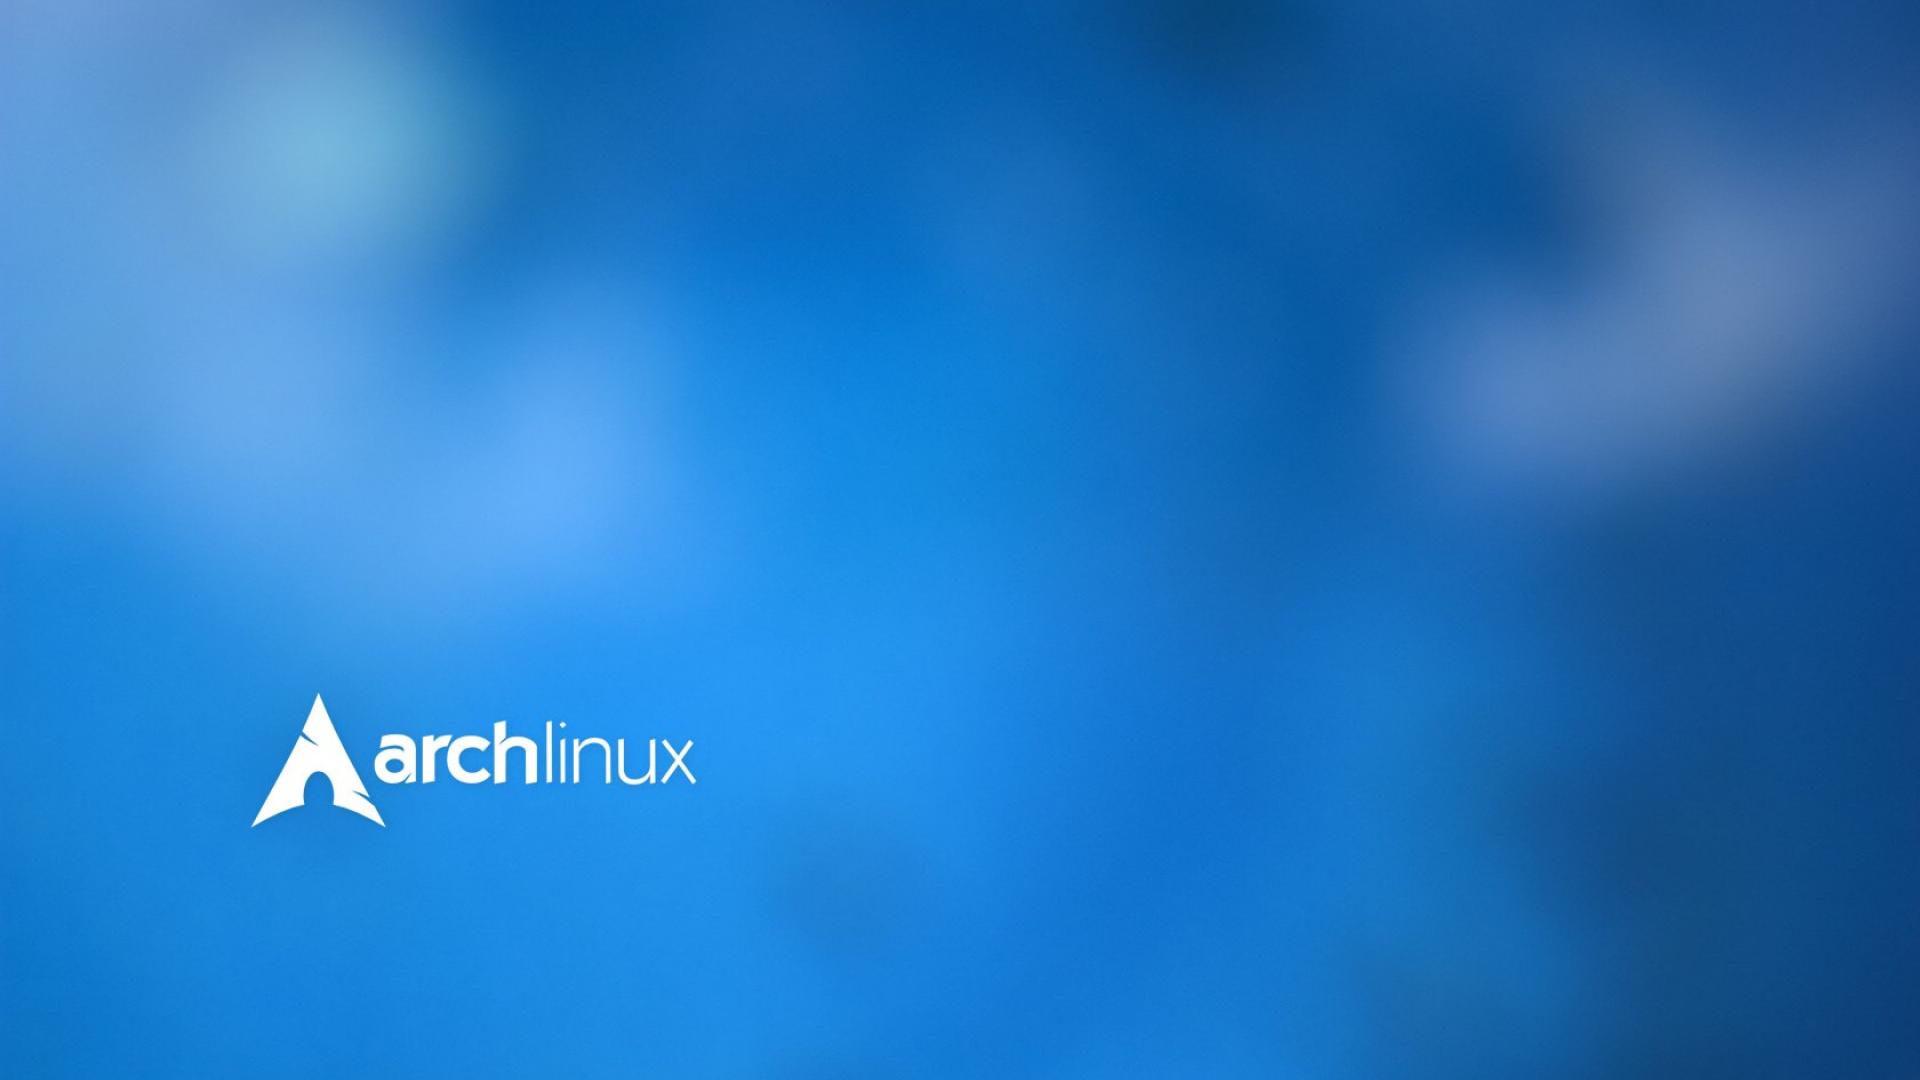 Arch Linux Background là một trong những bức hình nền đẹp nhất dành cho những người yêu thích hệ điều hành linux. Với thiết kế đơn giản nhưng không kém phần ấn tượng, bạn sẽ cảm thấy hài lòng khi sử dụng nó cho màn hình Desktop của mình.